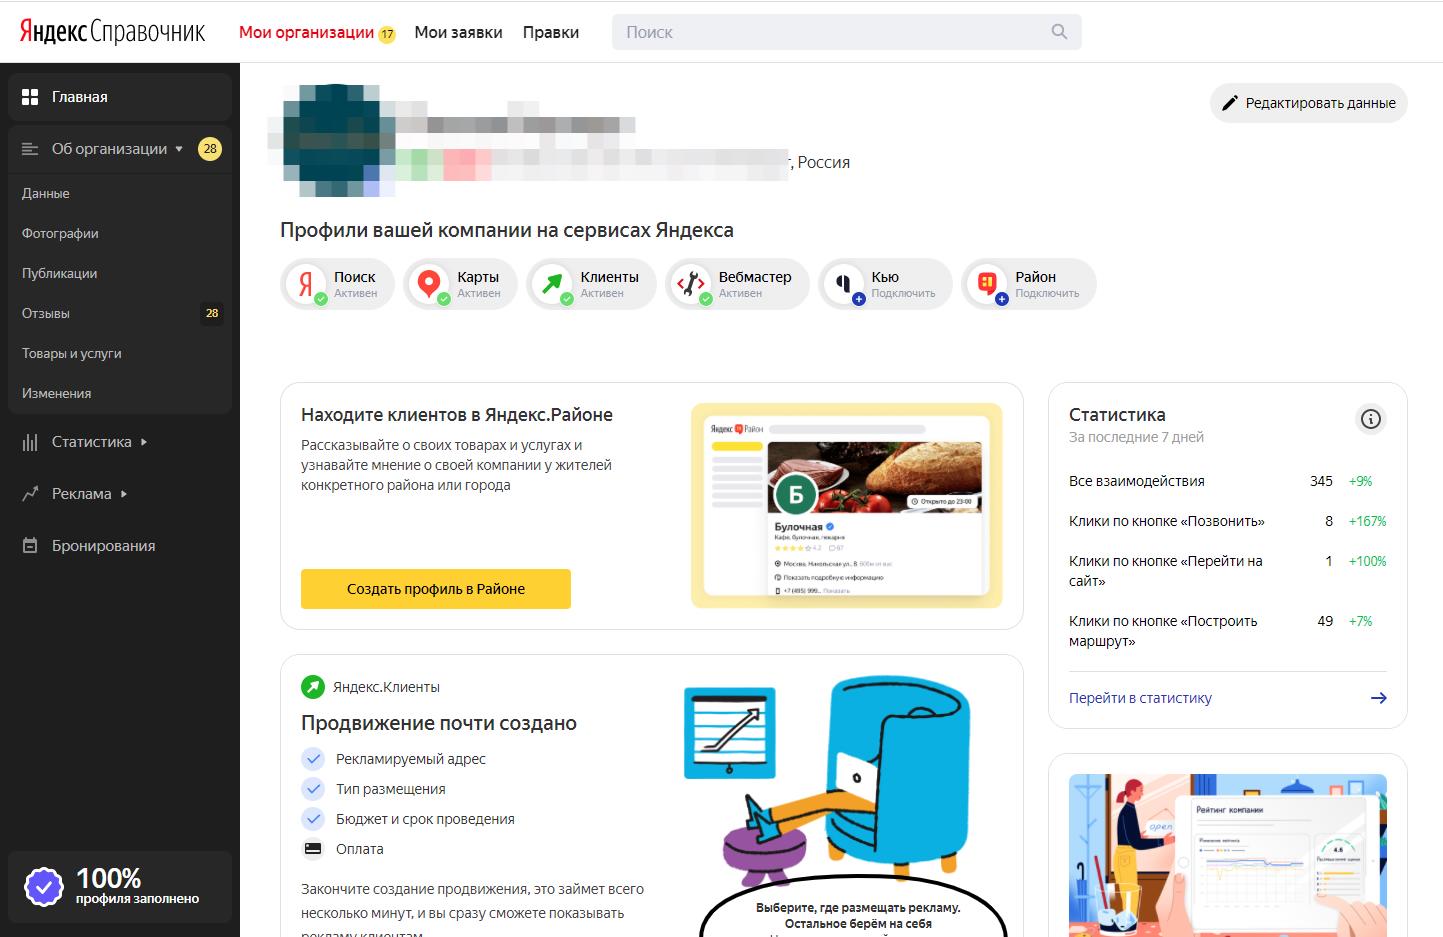 Основной экран Яндекс Справочника